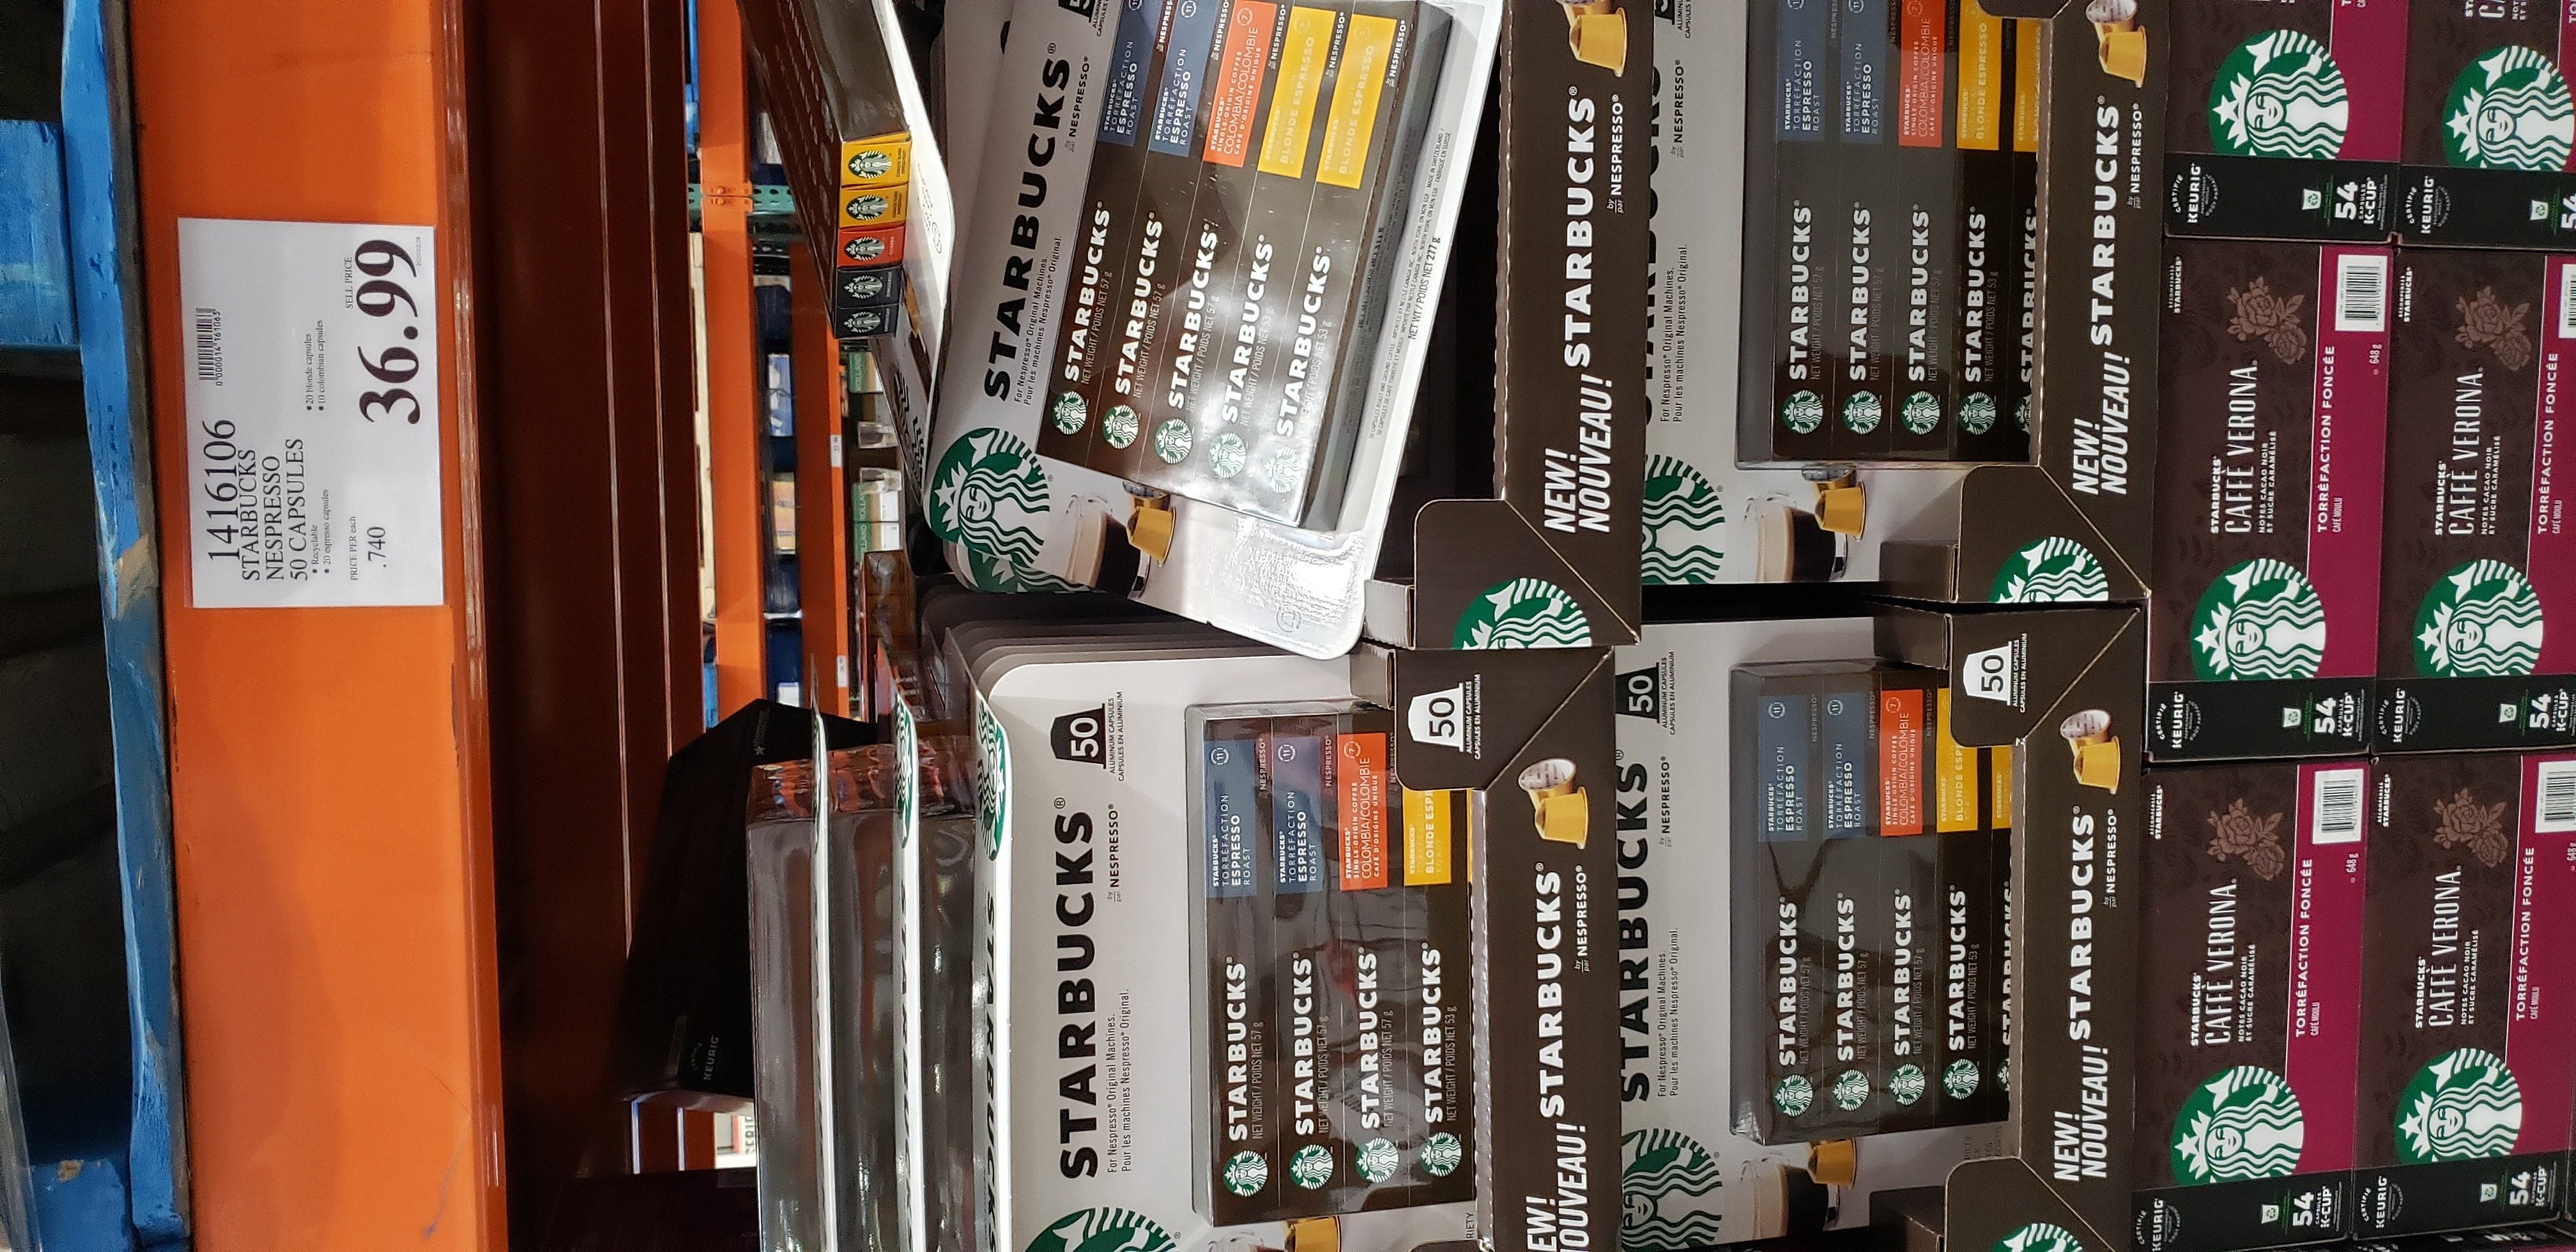 ret tigger jeg behøver Costco] Starbucks Nespresso Pods (original line) @ Costco GTA $36.99 -  RedFlagDeals.com Forums